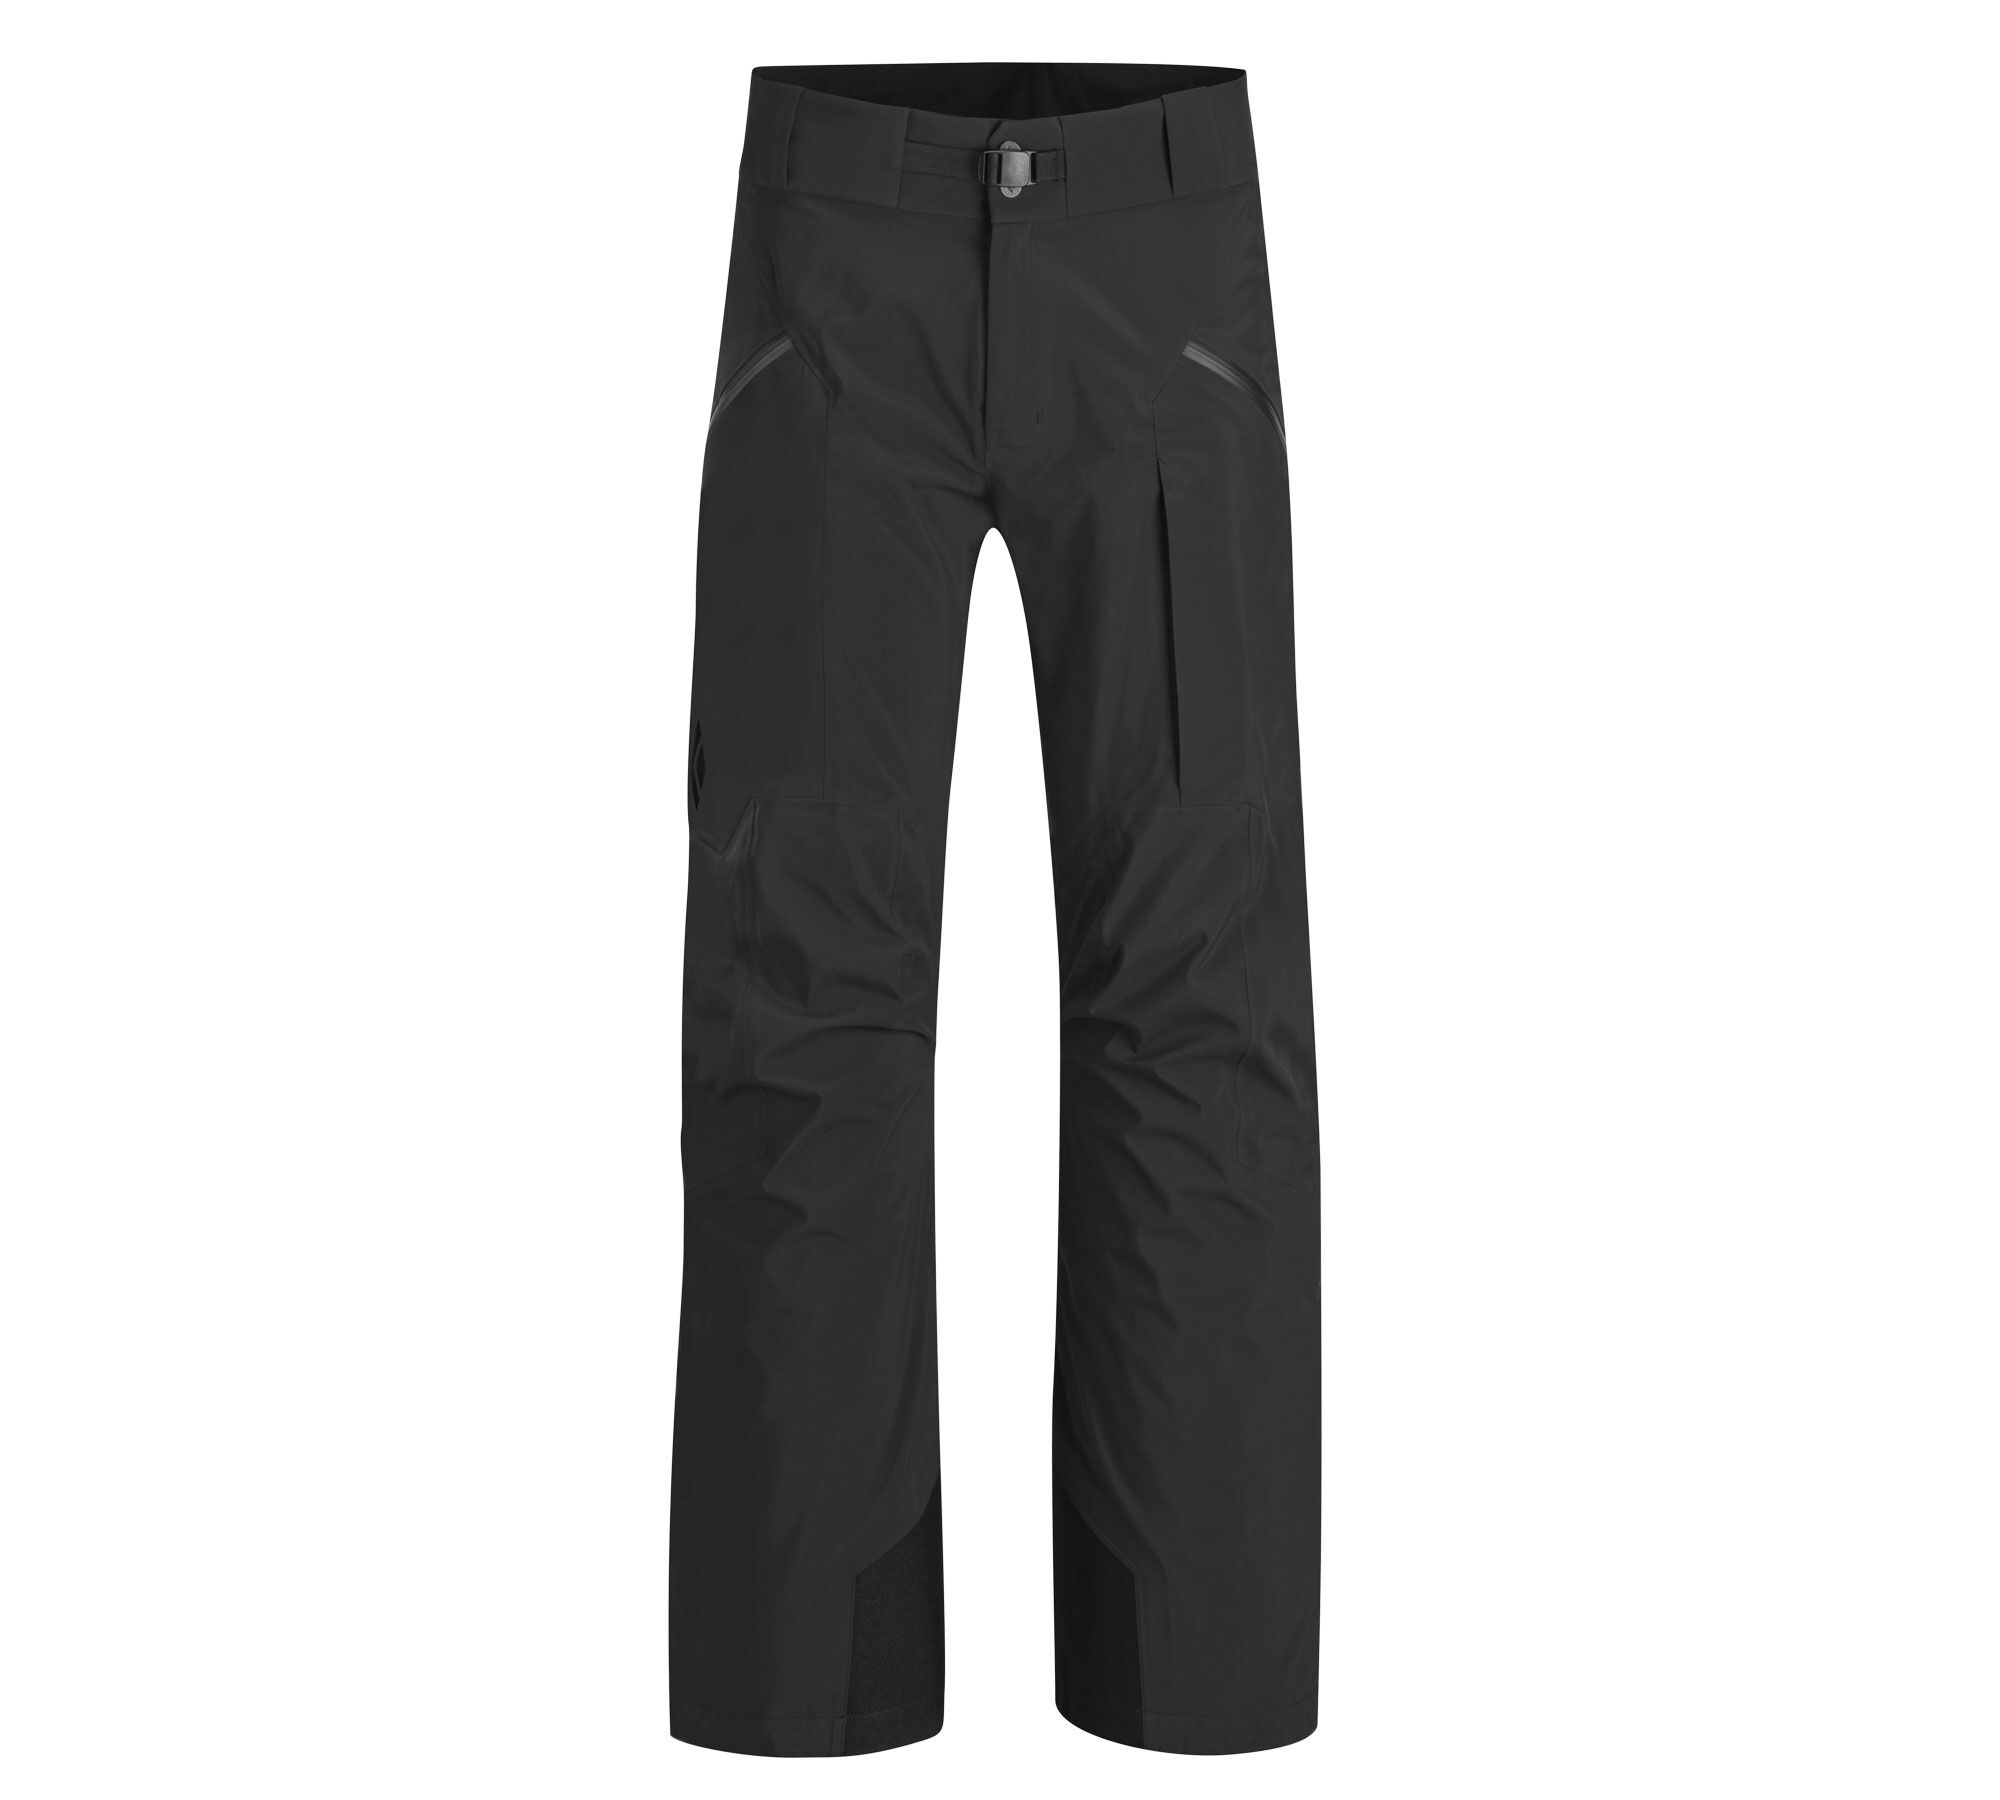 Black Diamond - Mission Pants - Ski pants - Men's